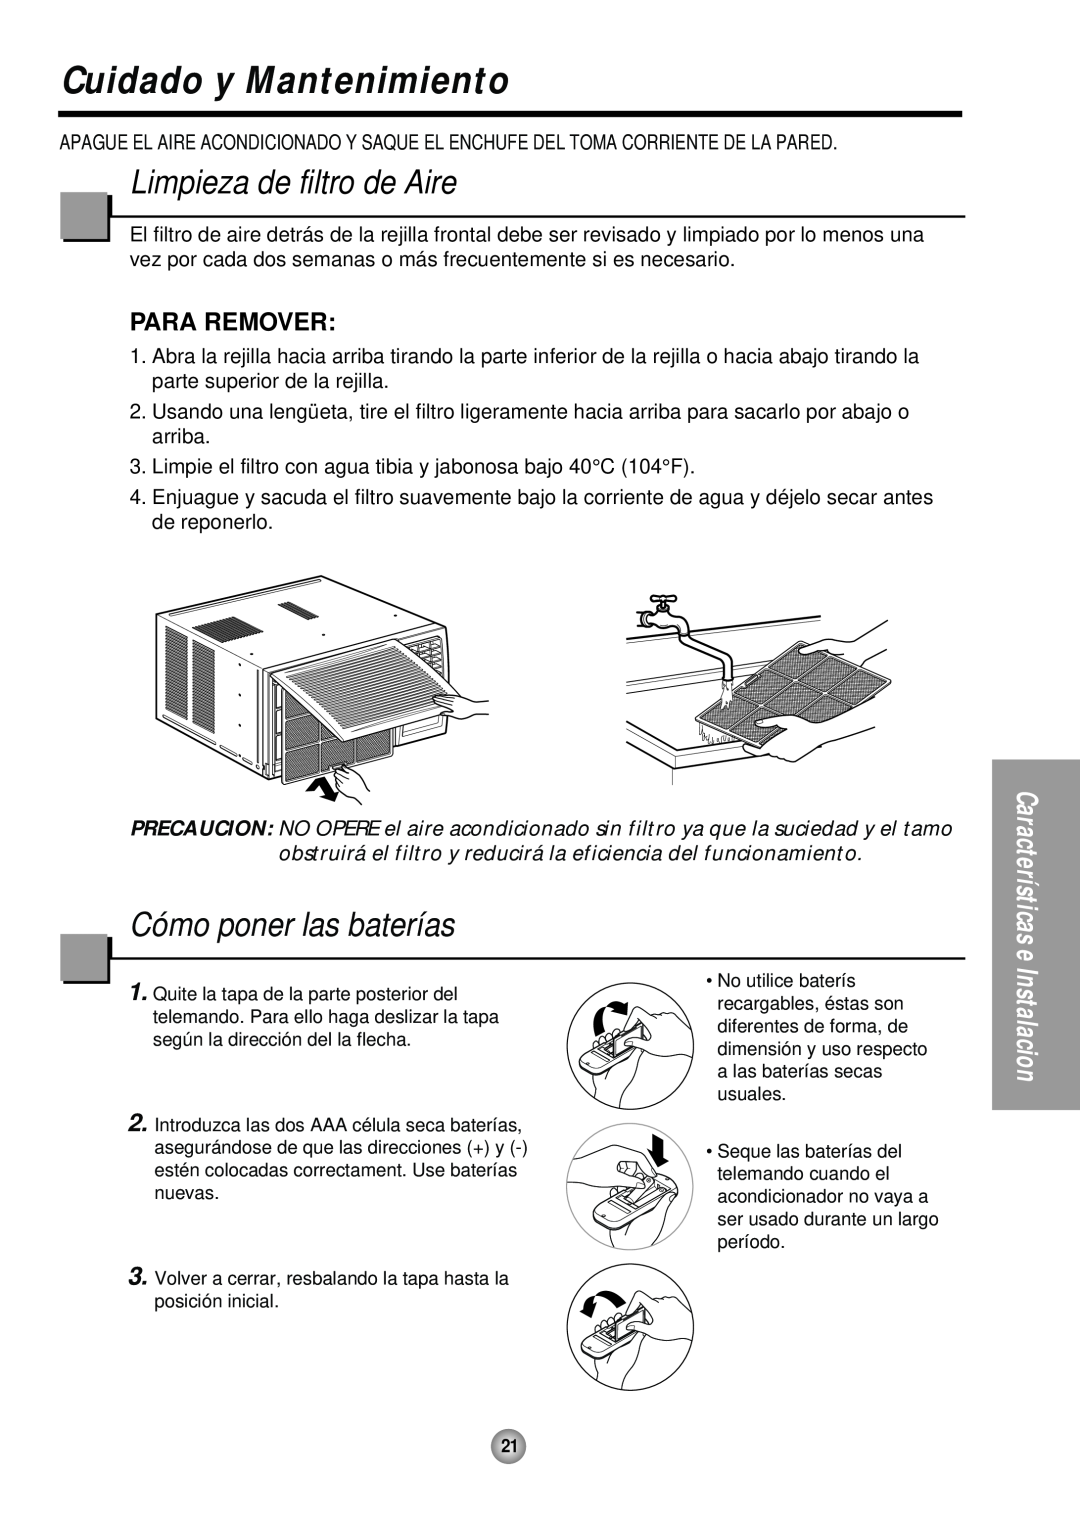 Panasonic CW-XC244HU manual Cuidado y Mantenimiento, Limpieza de filtro de Aire, Cómo poner las baterías, Para Remover 